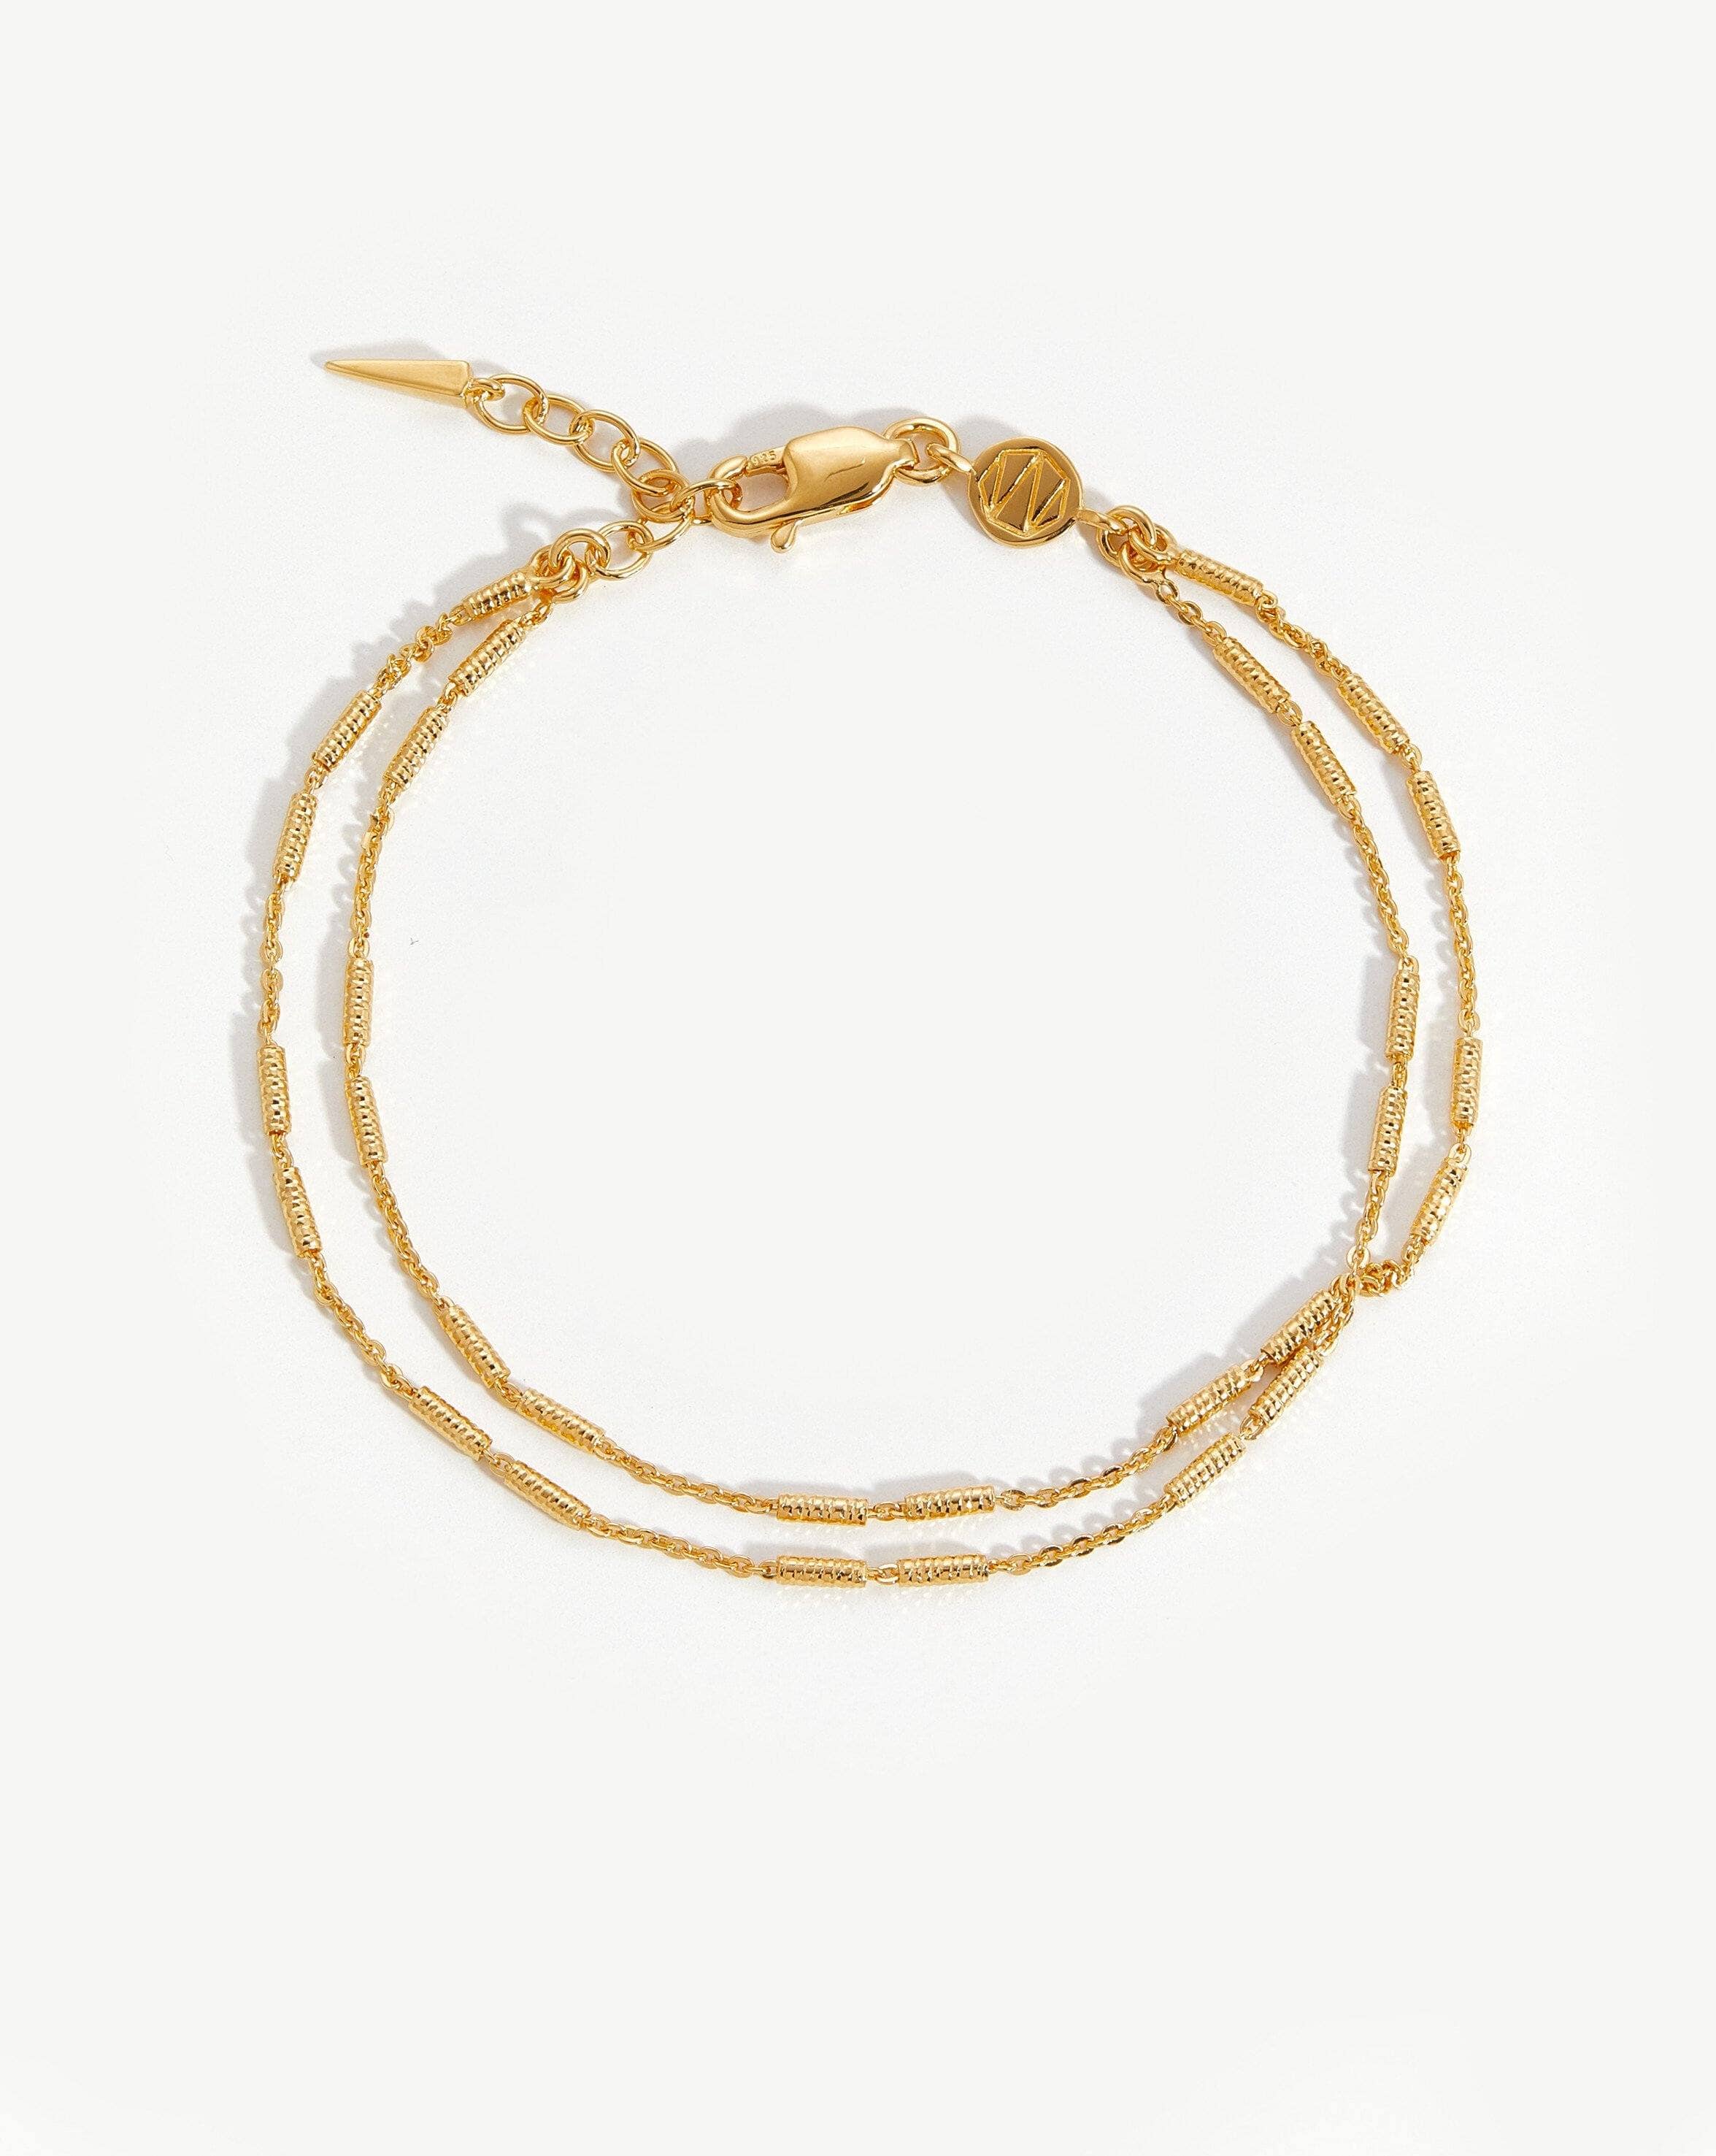 Vervelle Double Chain Bracelet | 18ct Gold Plated Vermeil Bracelets Missoma 